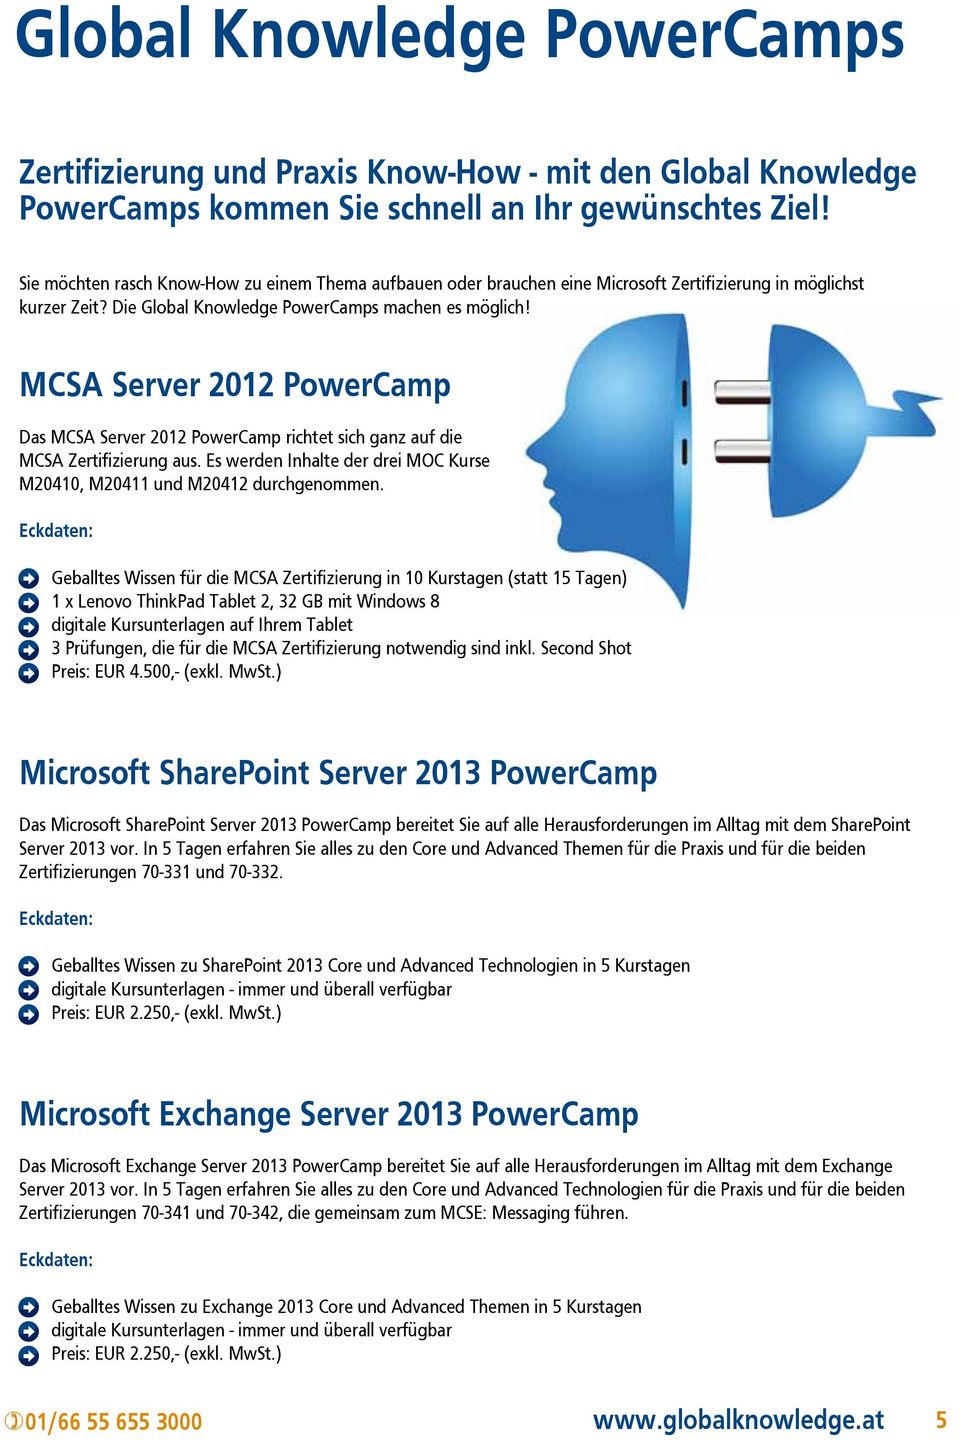 MCSA Server 2012 PowerCamp Das MCSA Server 2012 PowerCamp richtet sich ganz auf die MCSA Zertifizierung aus. Es werden Inhalte der drei MOC Kurse M20410, M20411 und M20412 durchgenommen.